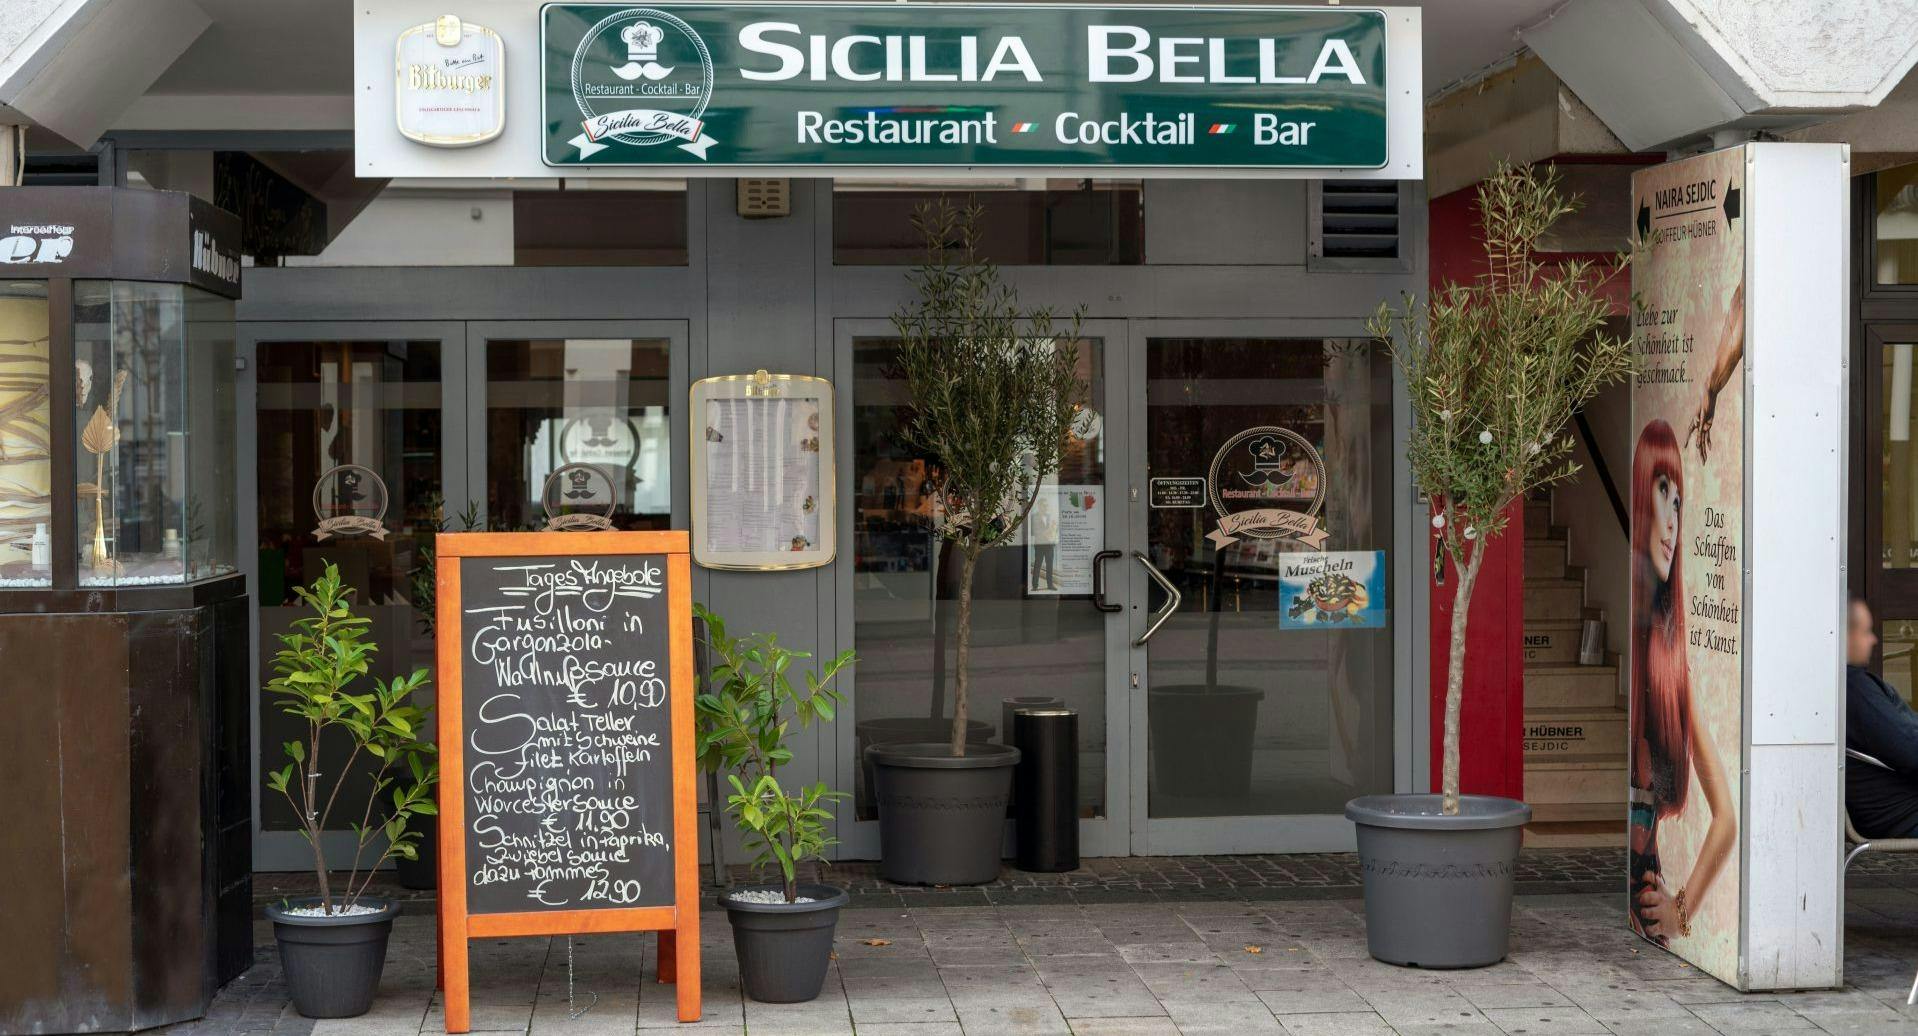 Bilder von Restaurant Sicilia Bella in Bad Godesberg, Bonn